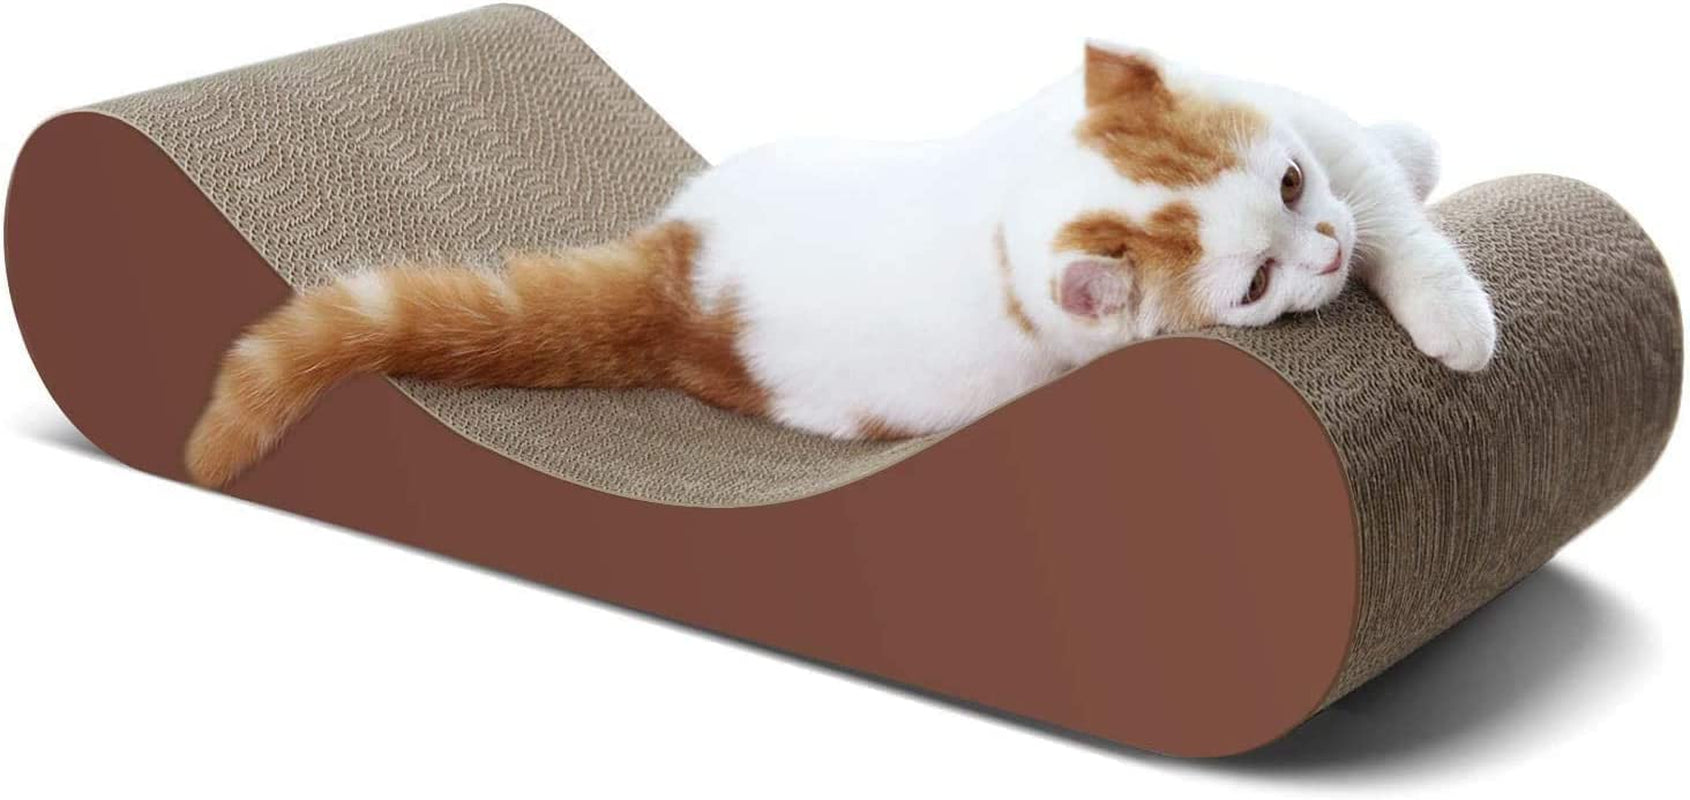 Bone Cat Scratcher Cardboard Lounge Bed, Cat Scratching Post, Durable Board Pads Prevents Furniture Damage